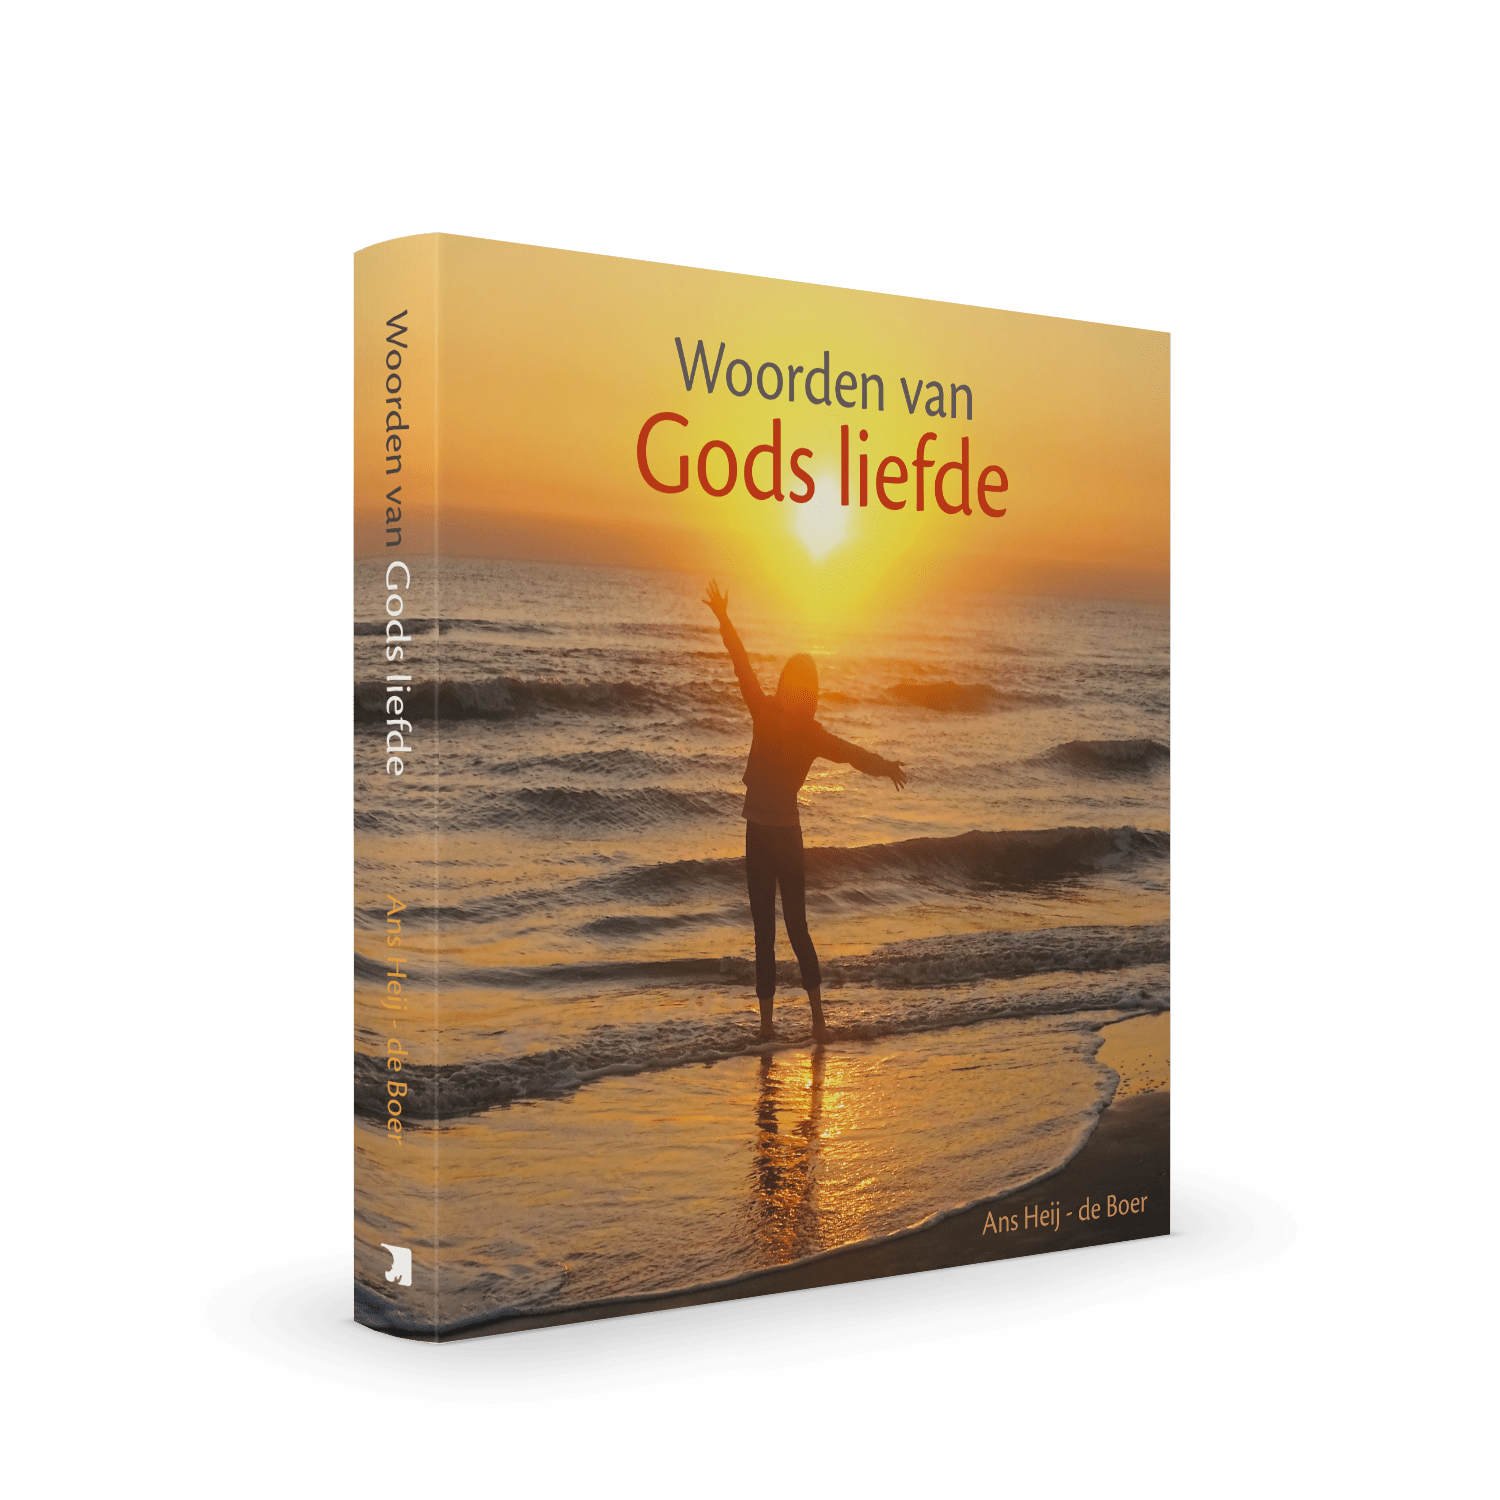 Ongebruikt Woorden van Gods Liefde, Ans Heij, €13,50 (gratis verz.) EC-44